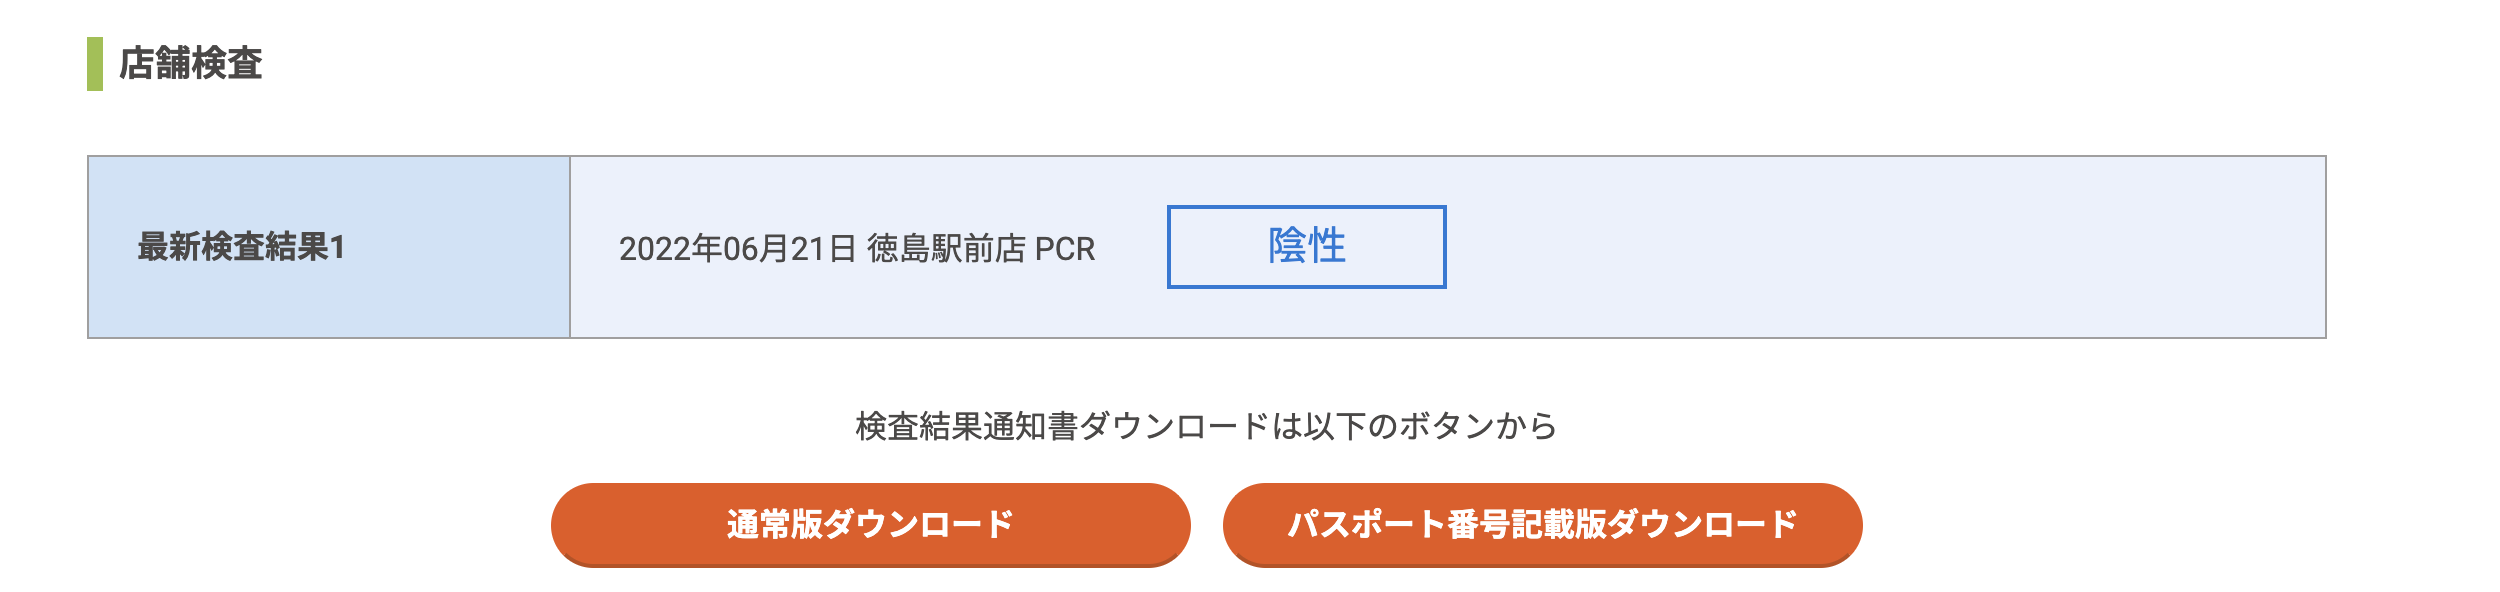 日本返台回國PCR｜預約、價格、採檢、結果確認、登機文件許可，徳島車站前4200元日幣